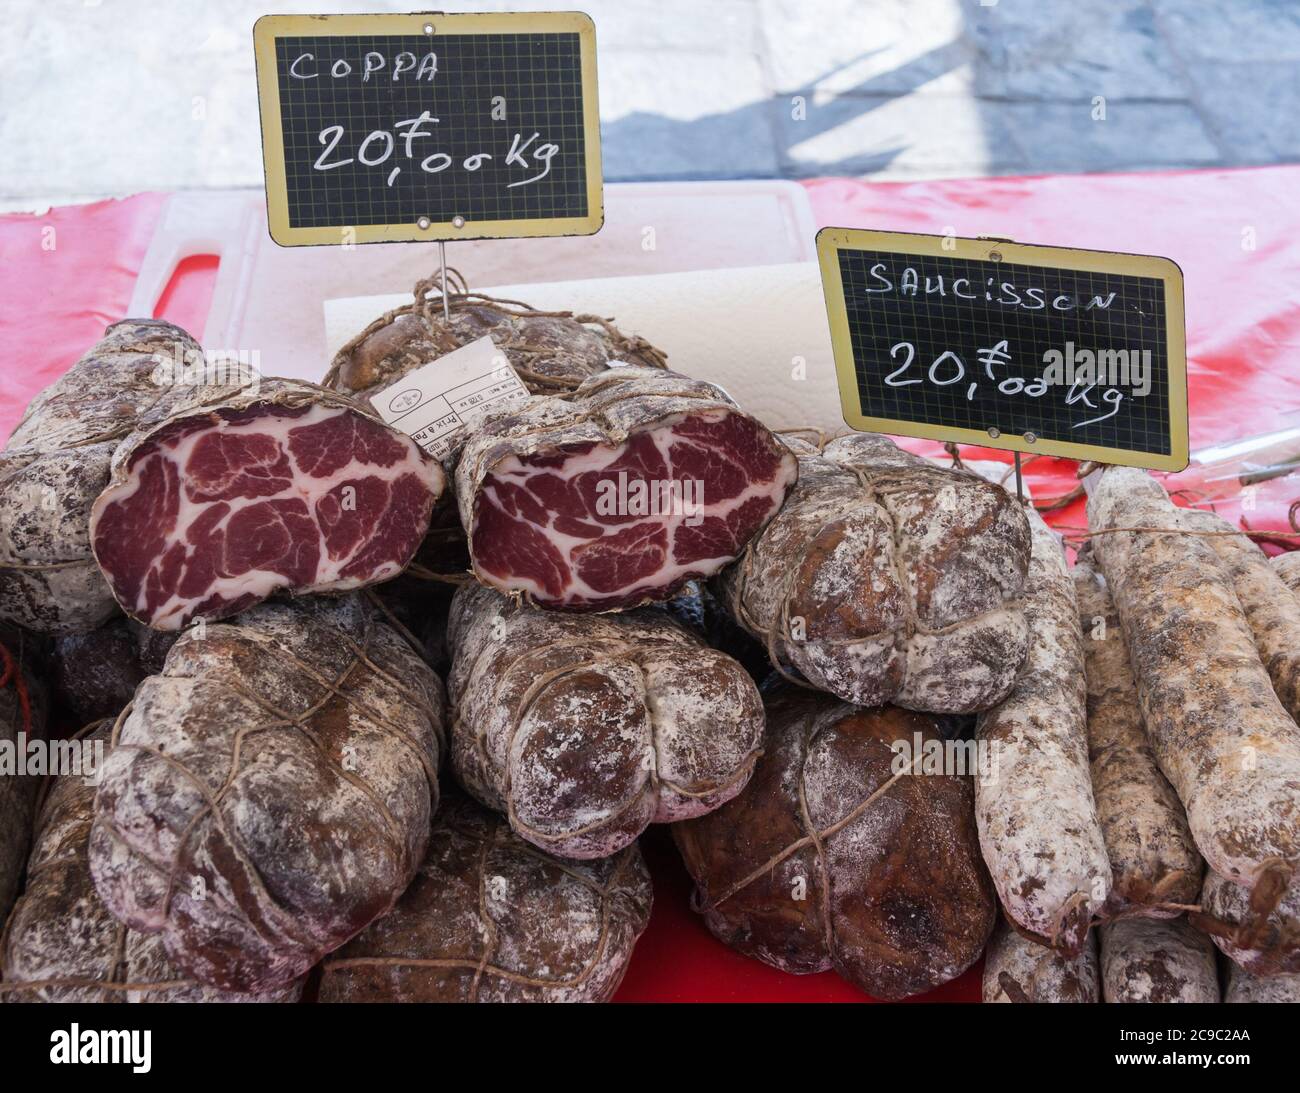 Salchichas artesanales (coppa, saucisson) a la venta en un mercado en Bastia, Córcega, Francia Foto de stock